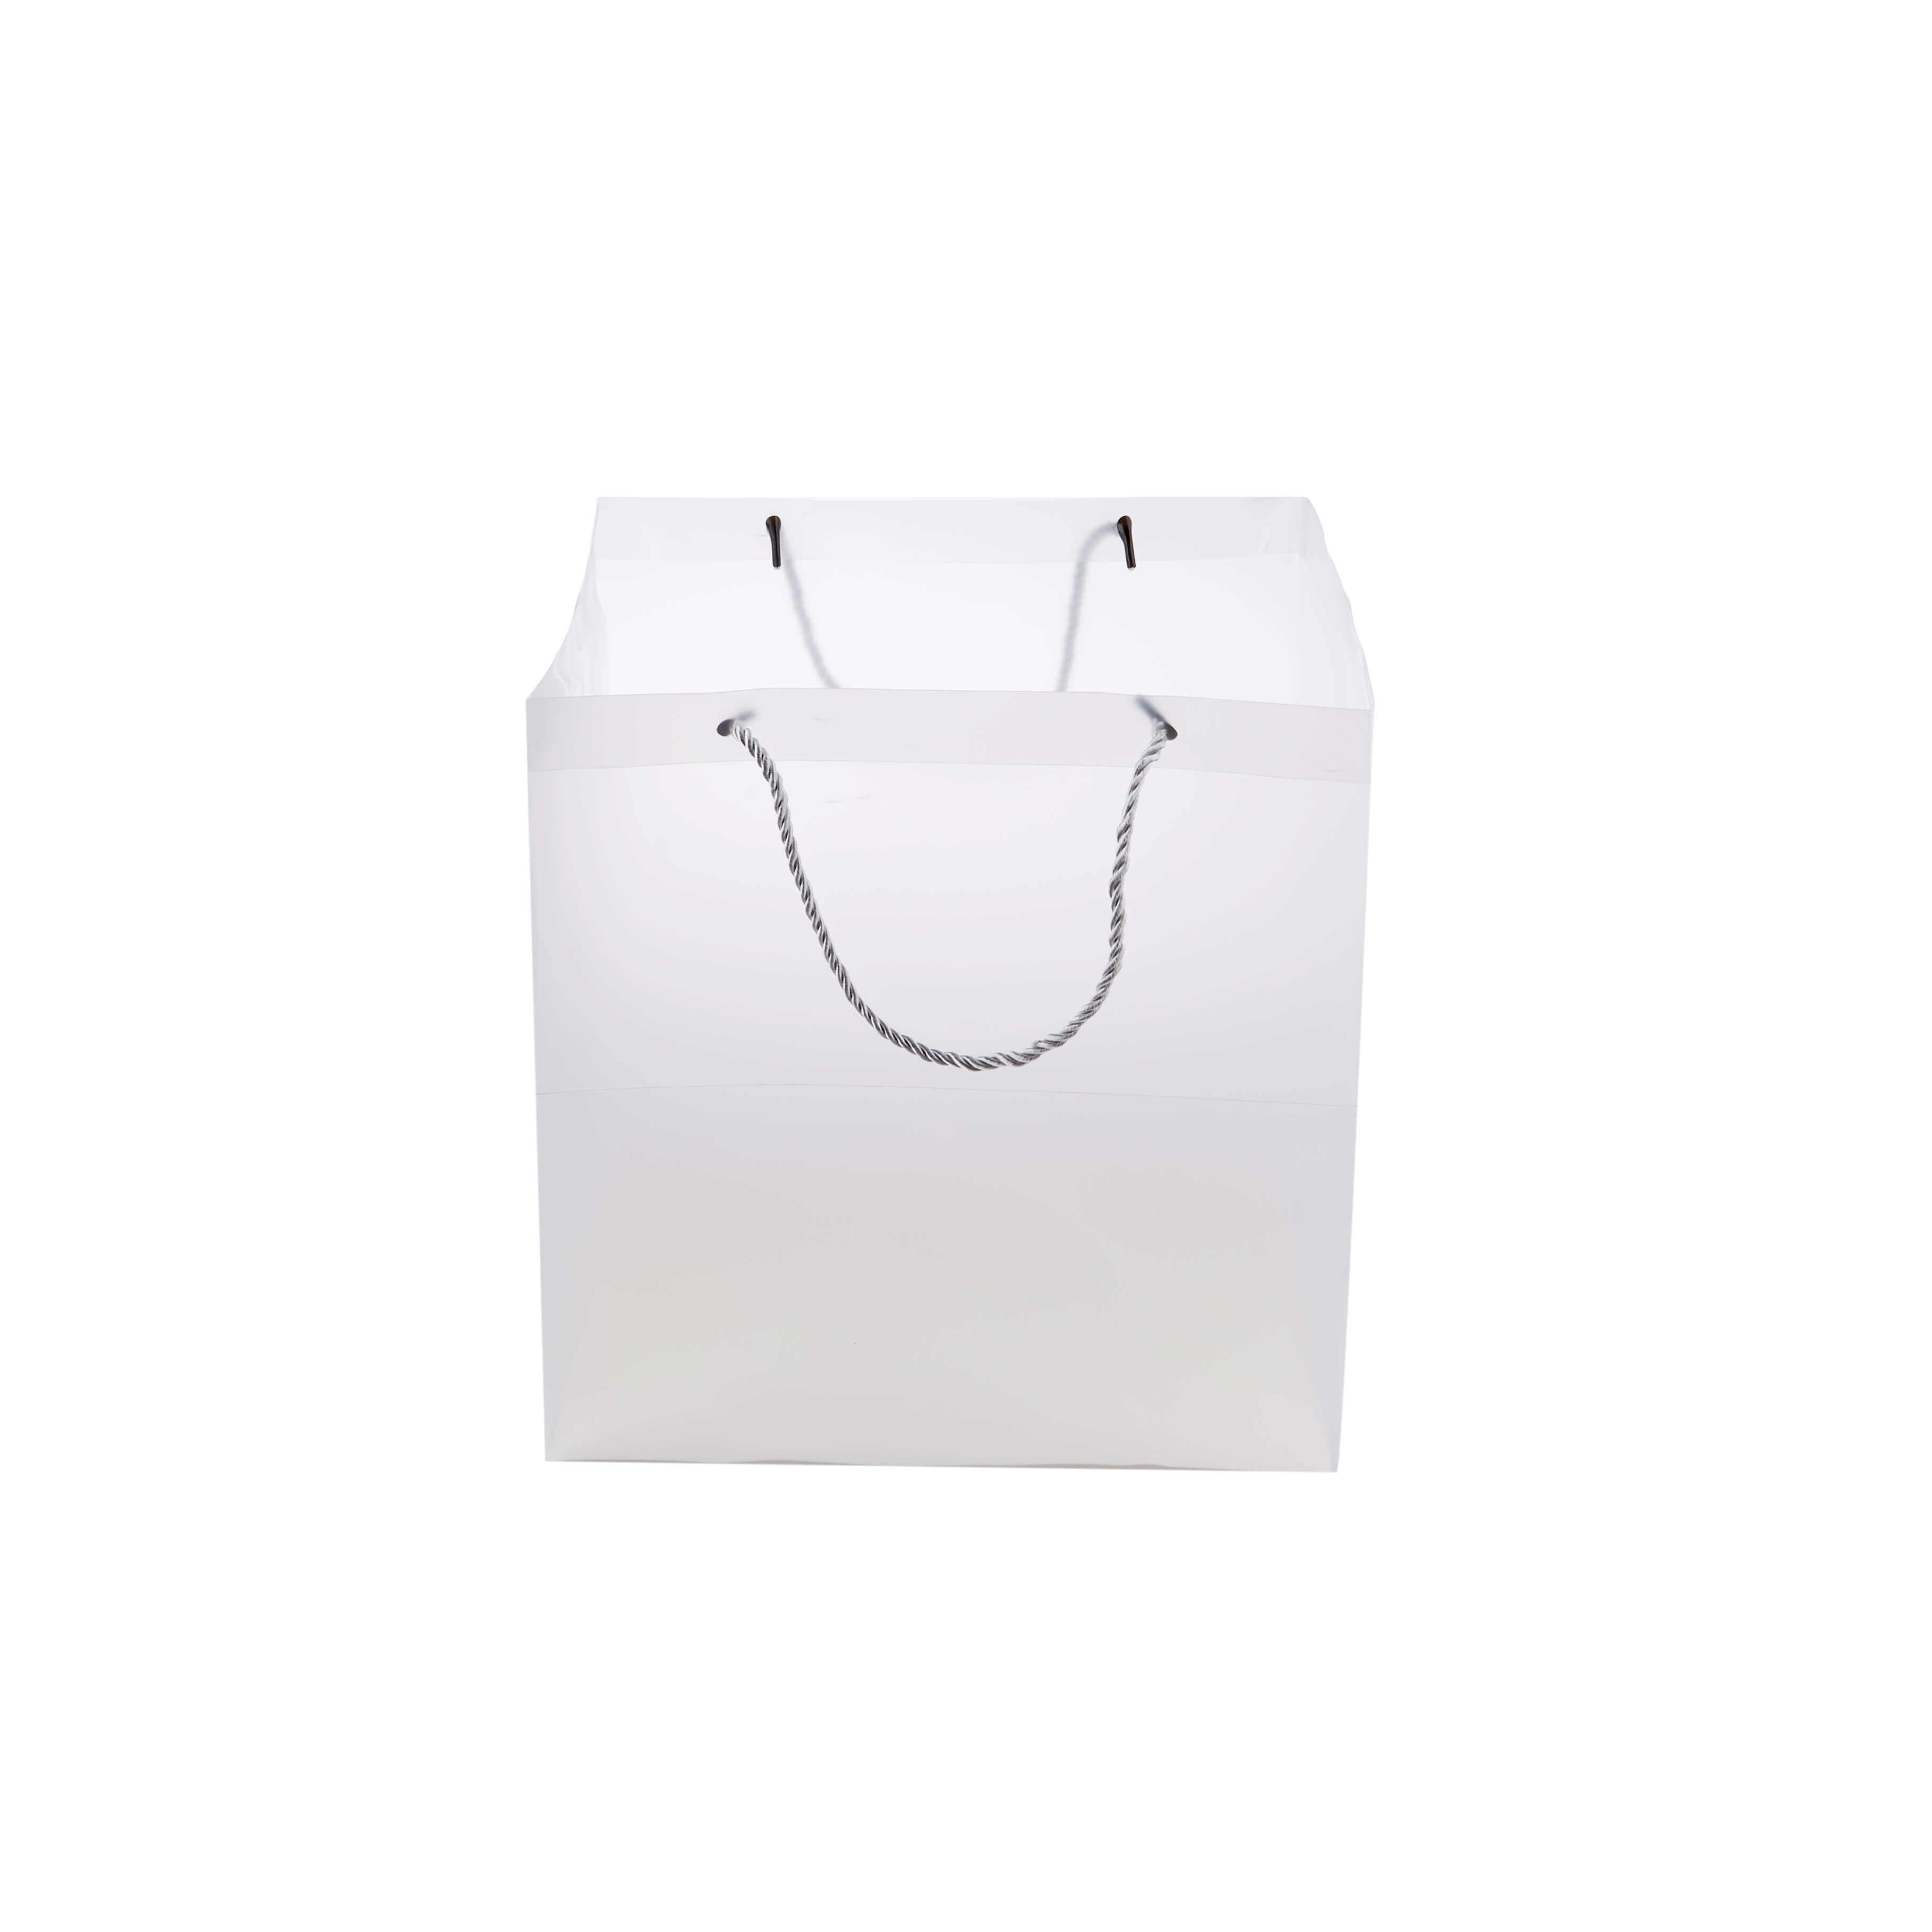 Gift bag - Hotpack Global 